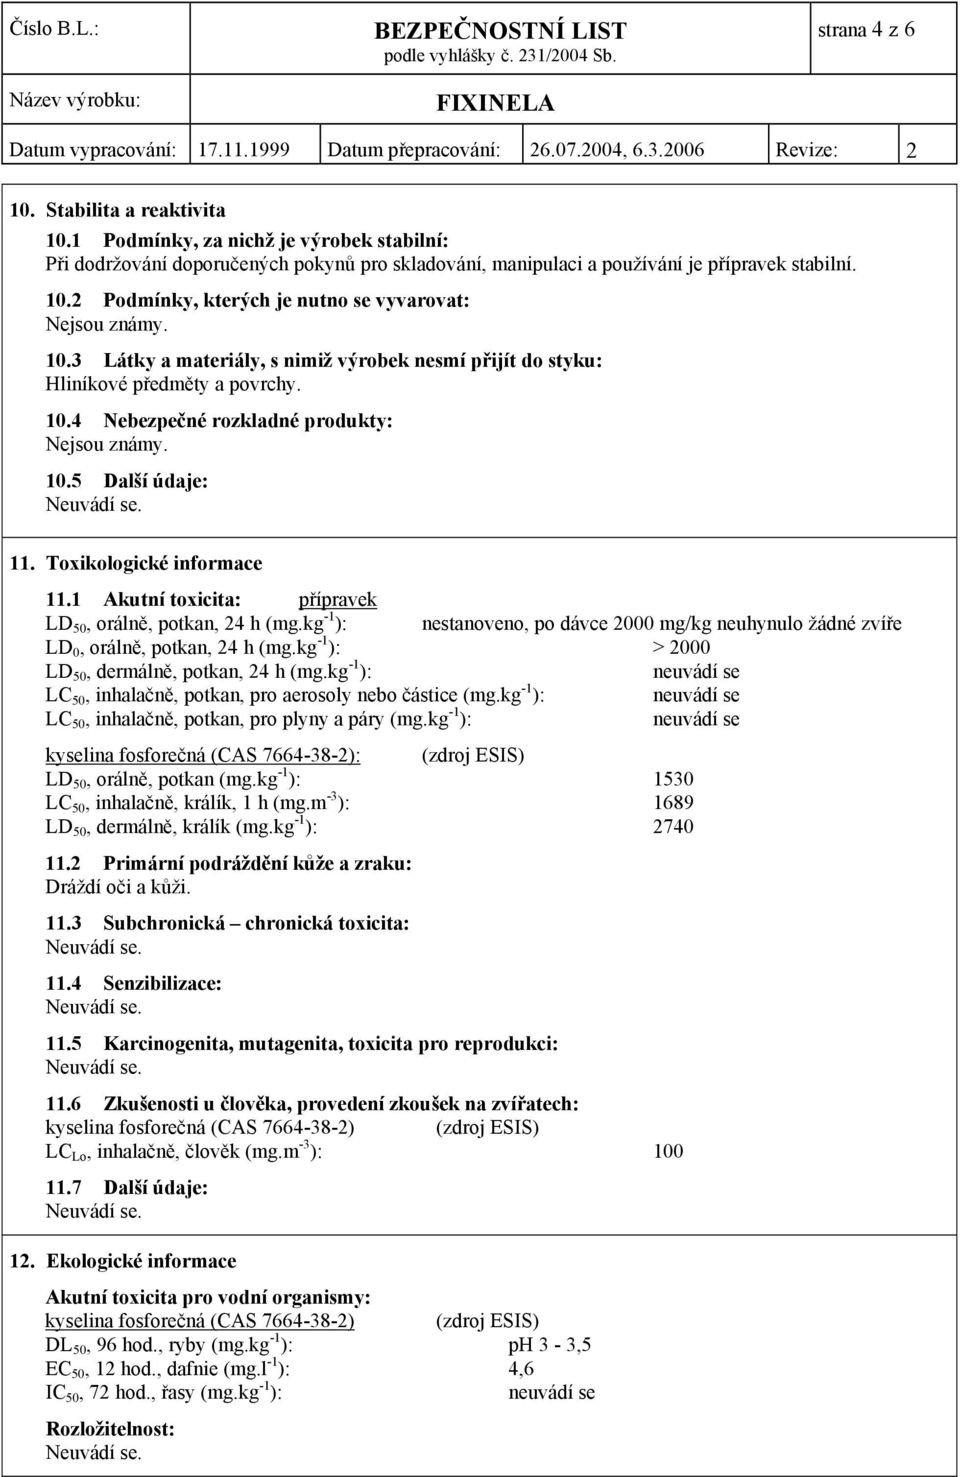 1 Akutní toxicita: přípravek LD 50, orálně, potkan, 24 h (mg.kg -1 ): nestanoveno, po dávce 2000 mg/kg neuhynulo žádné zvíře LD 0, orálně, potkan, 24 h (mg.